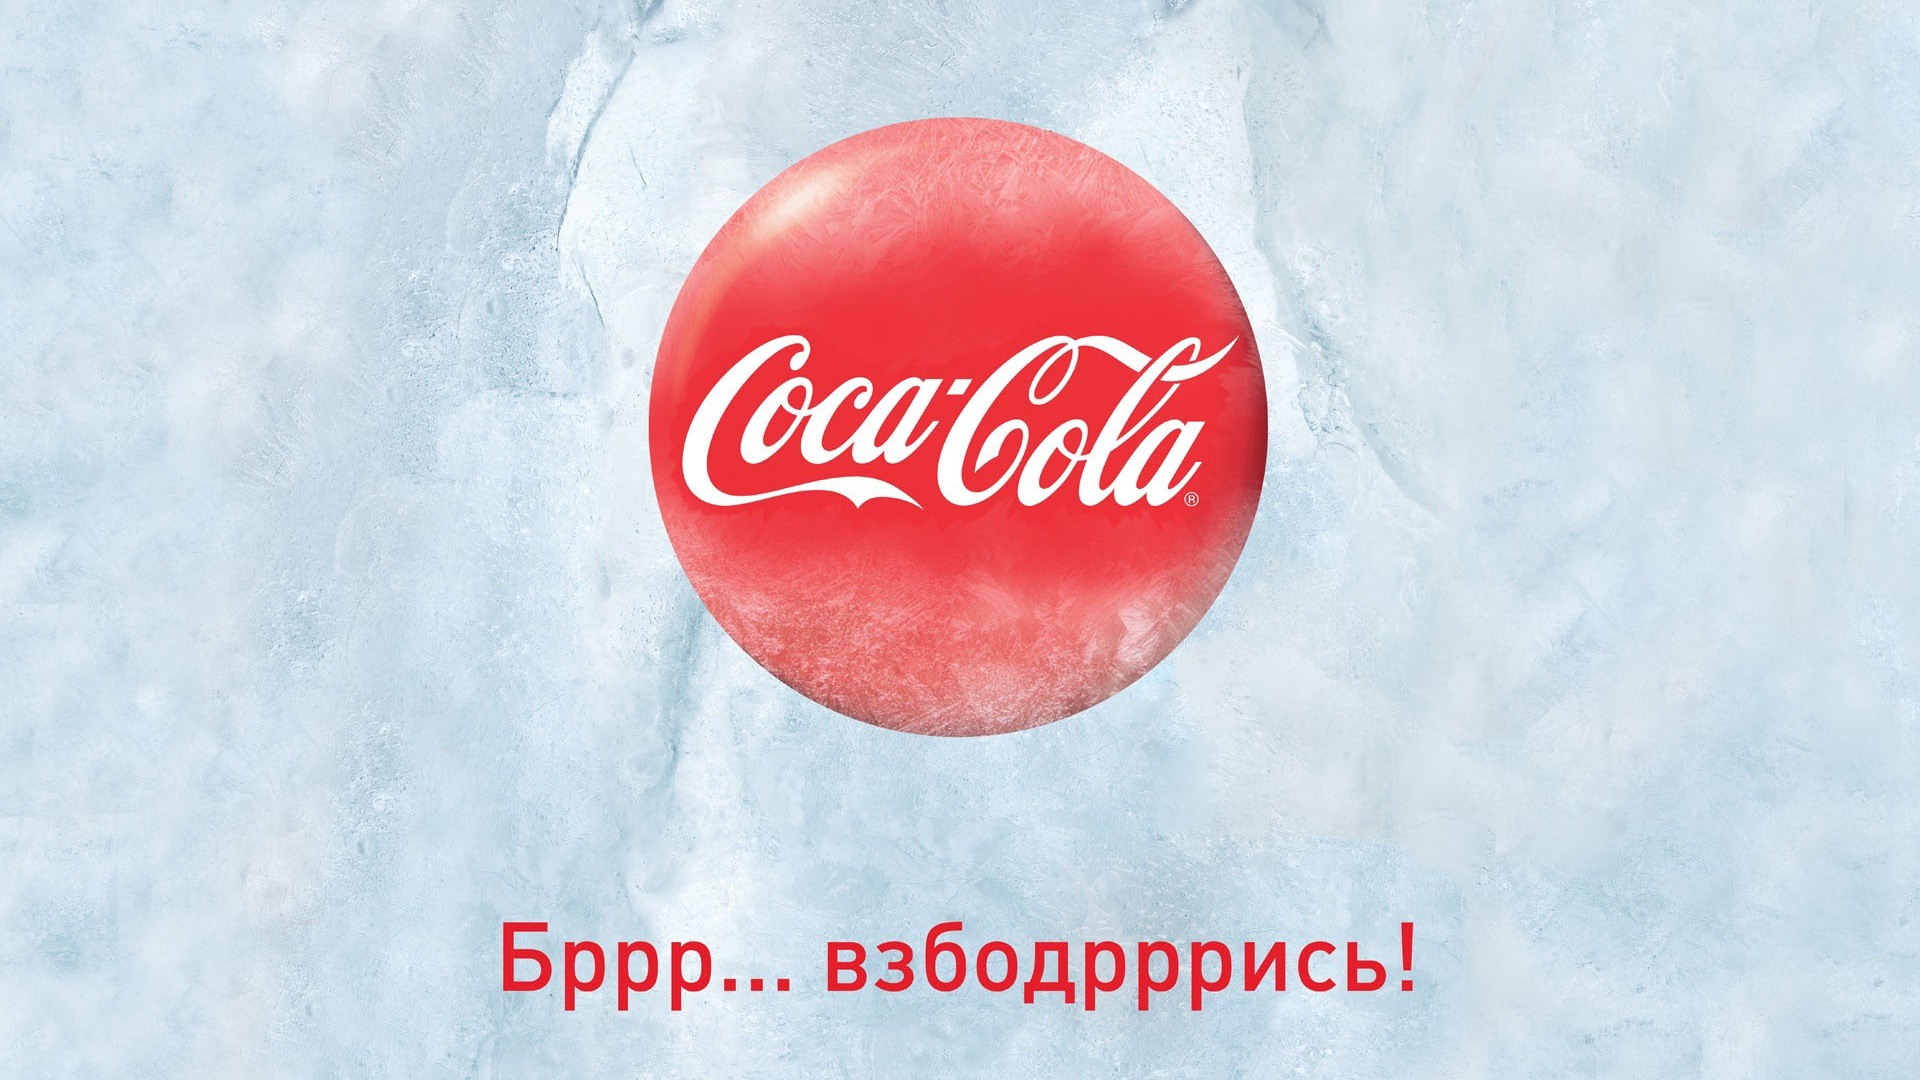 Coca-Cola krásná reklama tapety #9 - 1920x1080